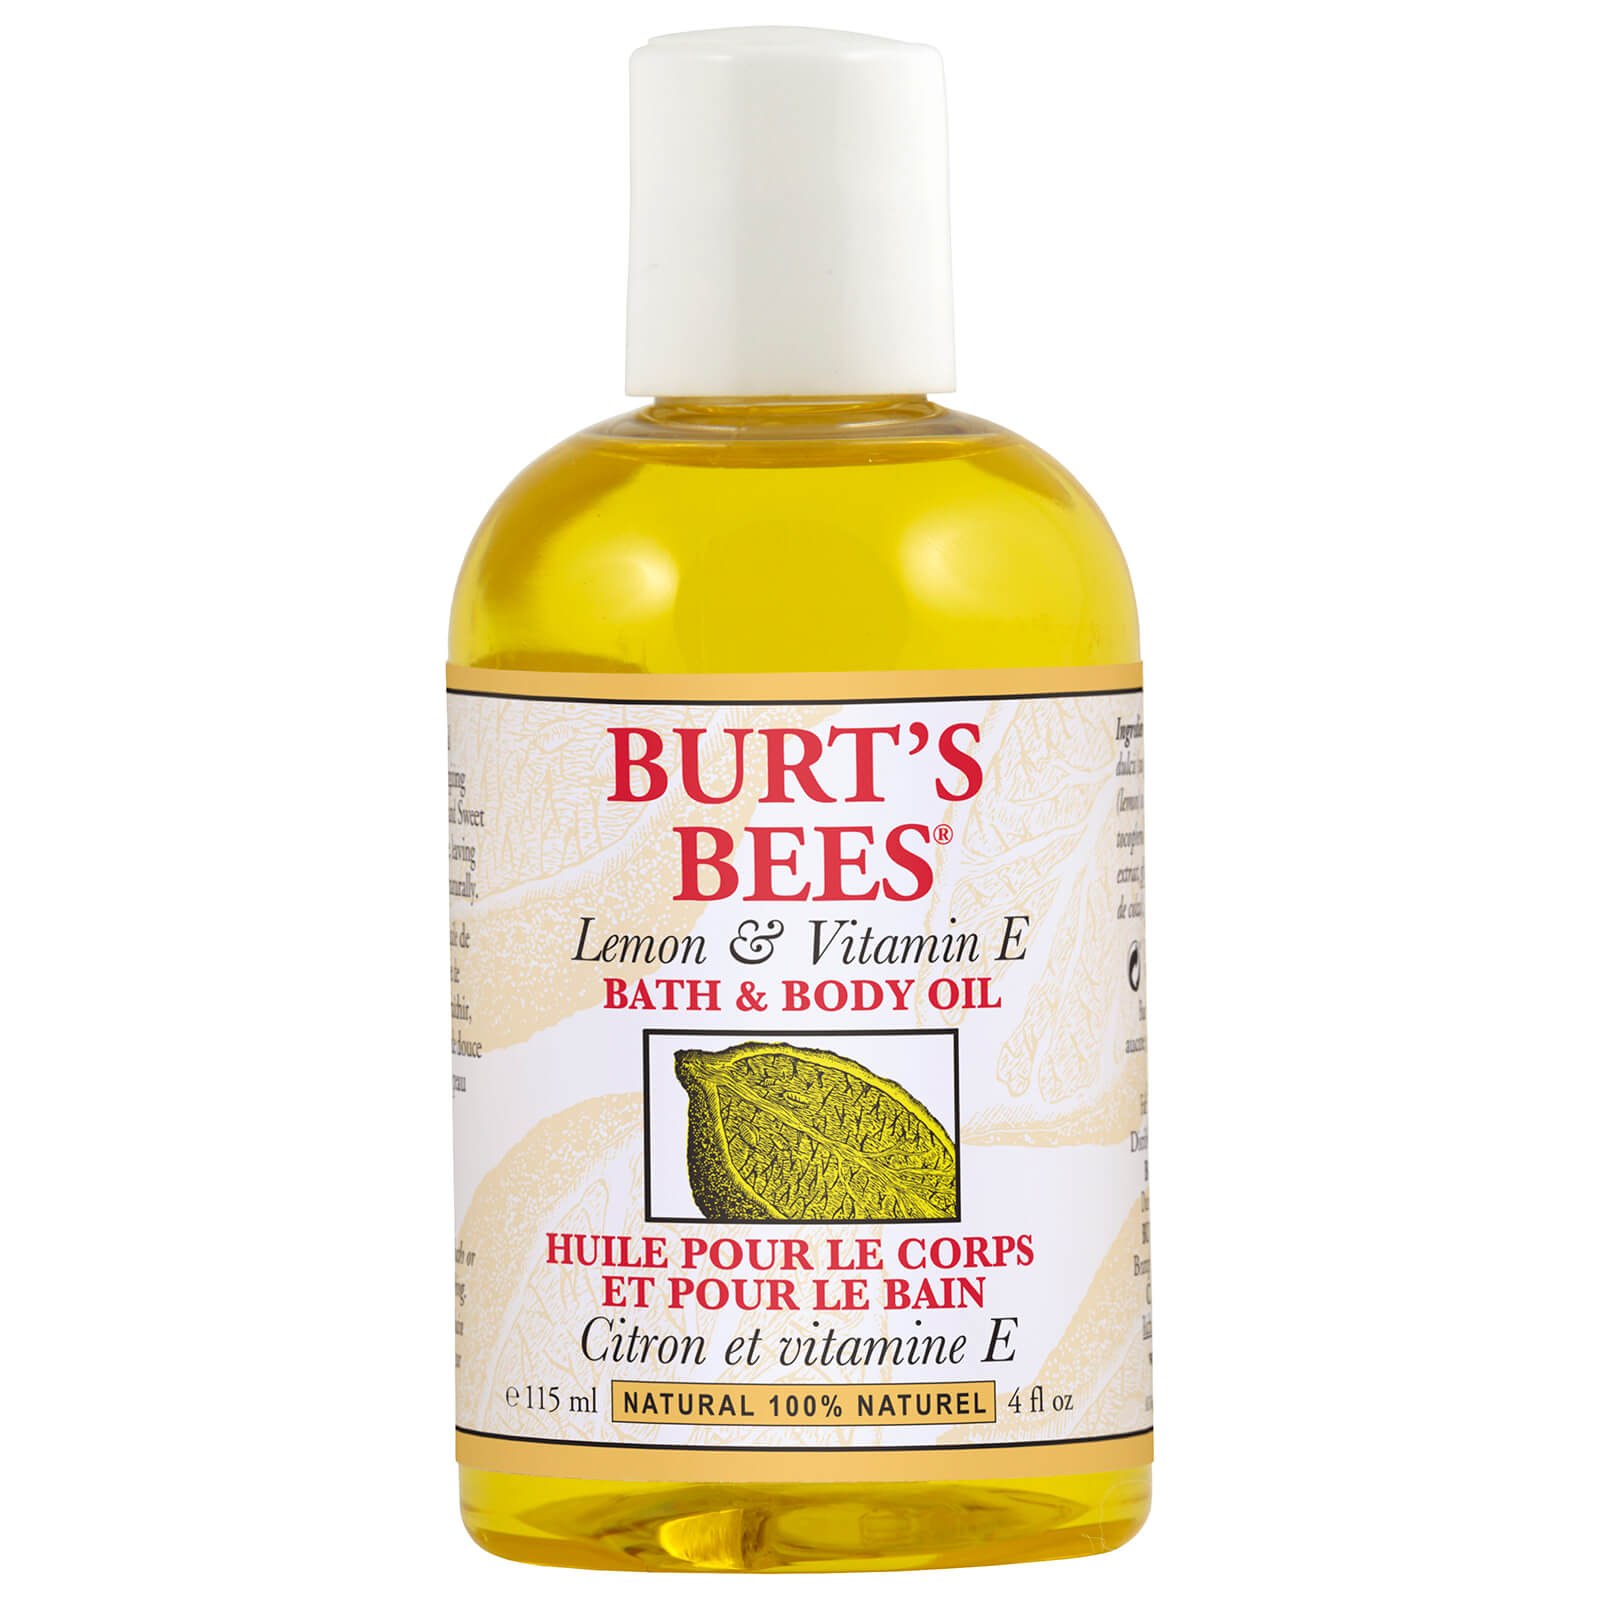 Aceite de cuerpo y baño Lemon & Vitamin E Bath & Body Oil de Burt's Bees (4 fl oz / 118 ml)